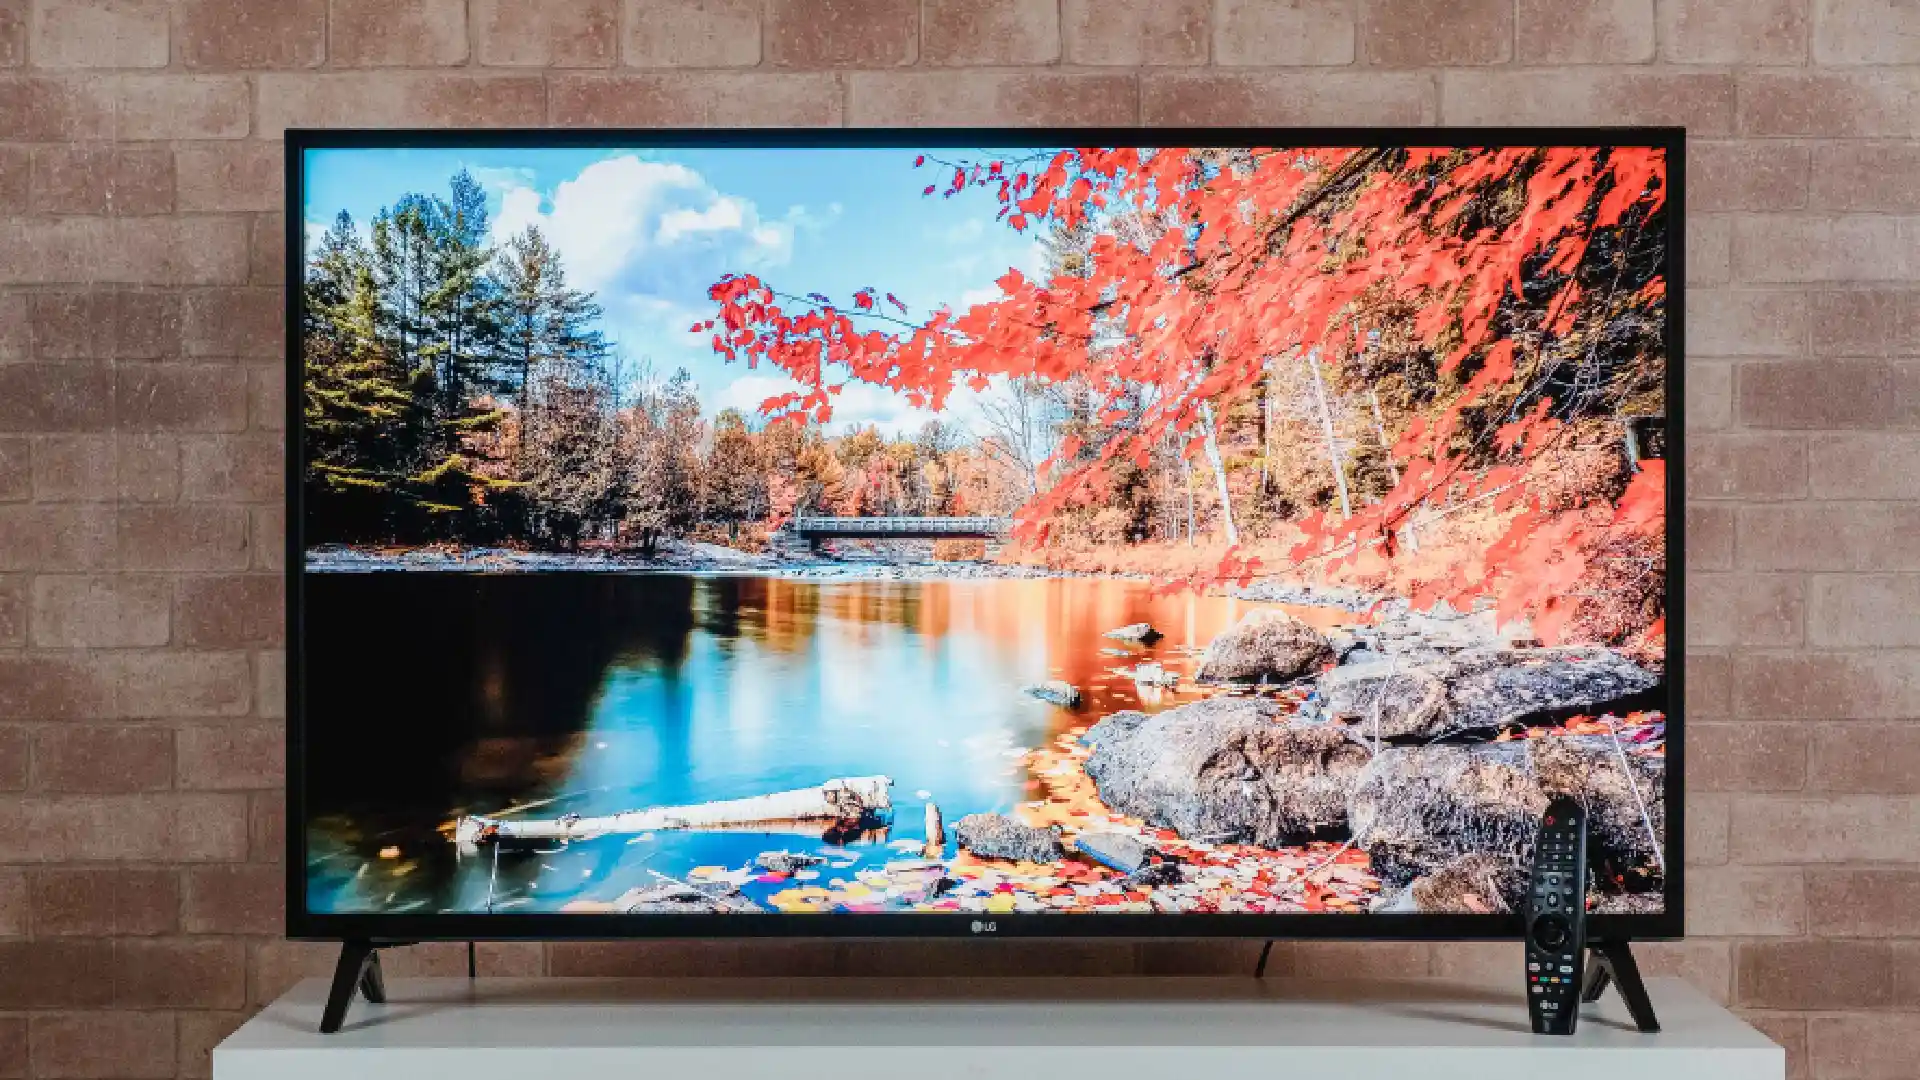 TV LG UN7310 sobre rack branco exibindo imagem de paisagem natural na tela